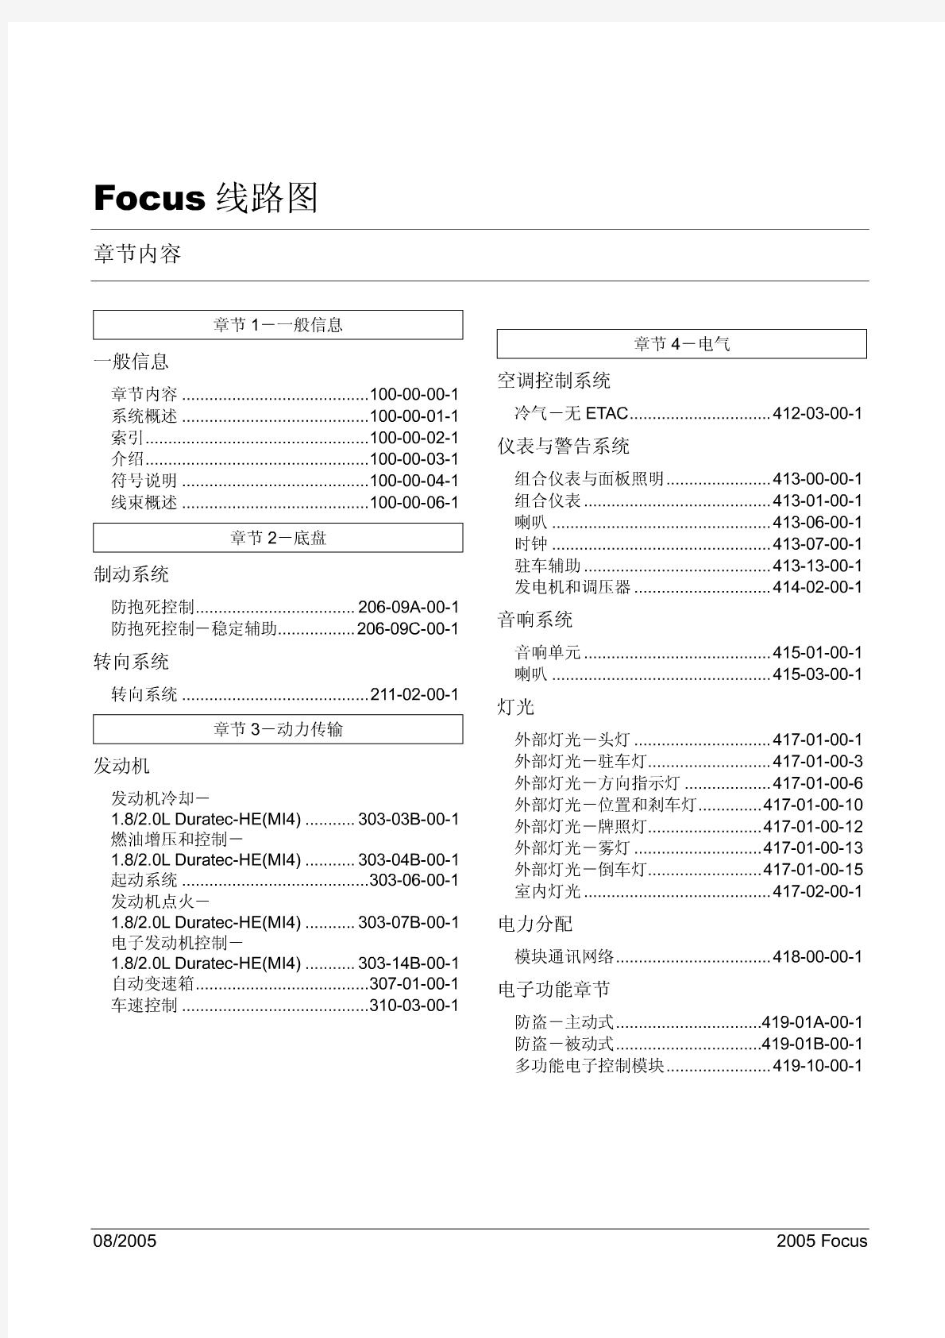 福克斯维修手册FOCUS电路图_100-00-01